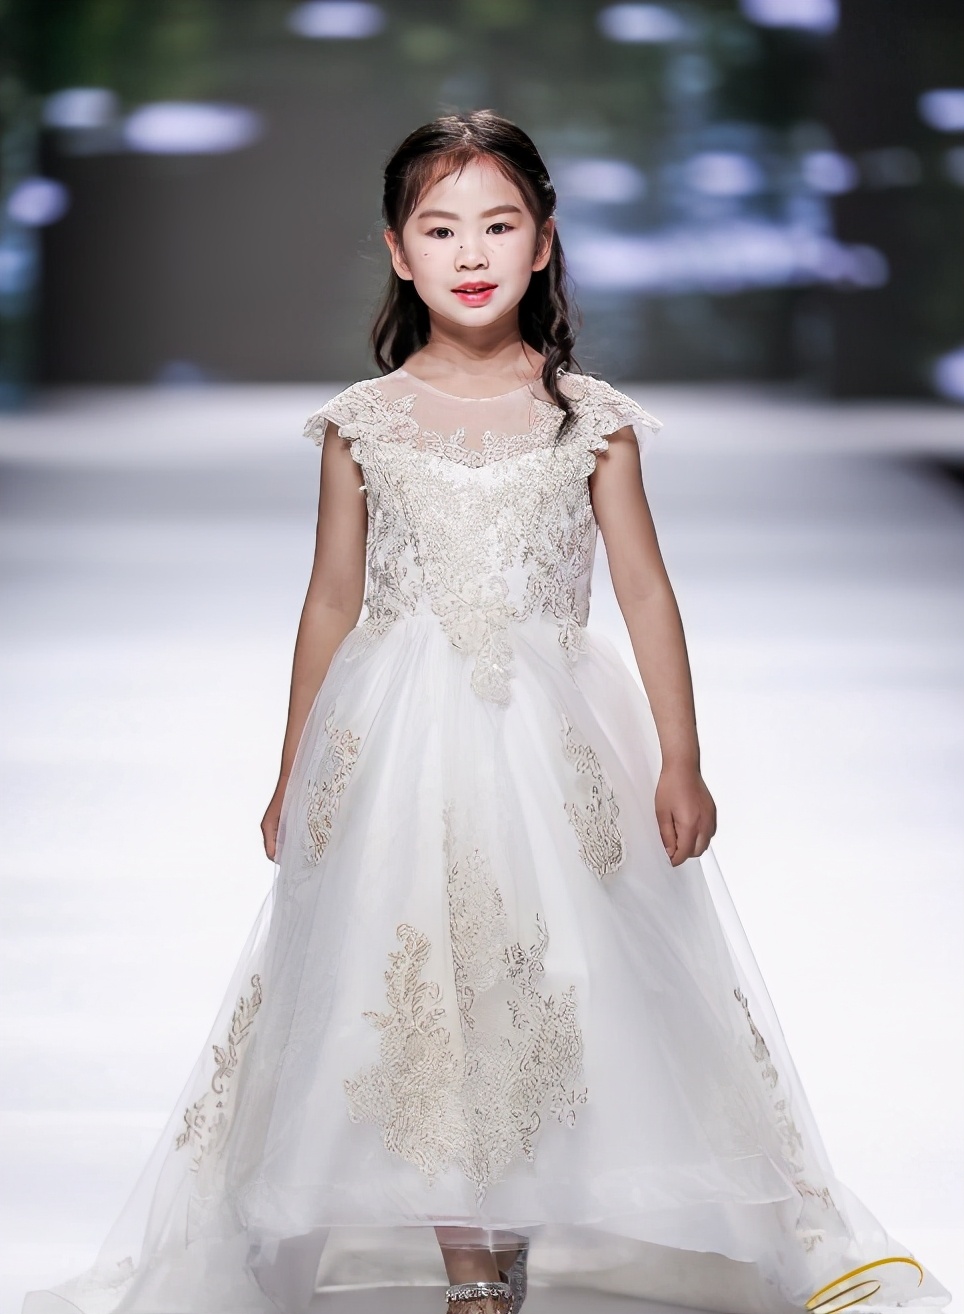 2021中国童模榜中榜时尚盛典全球代言人李凝玥